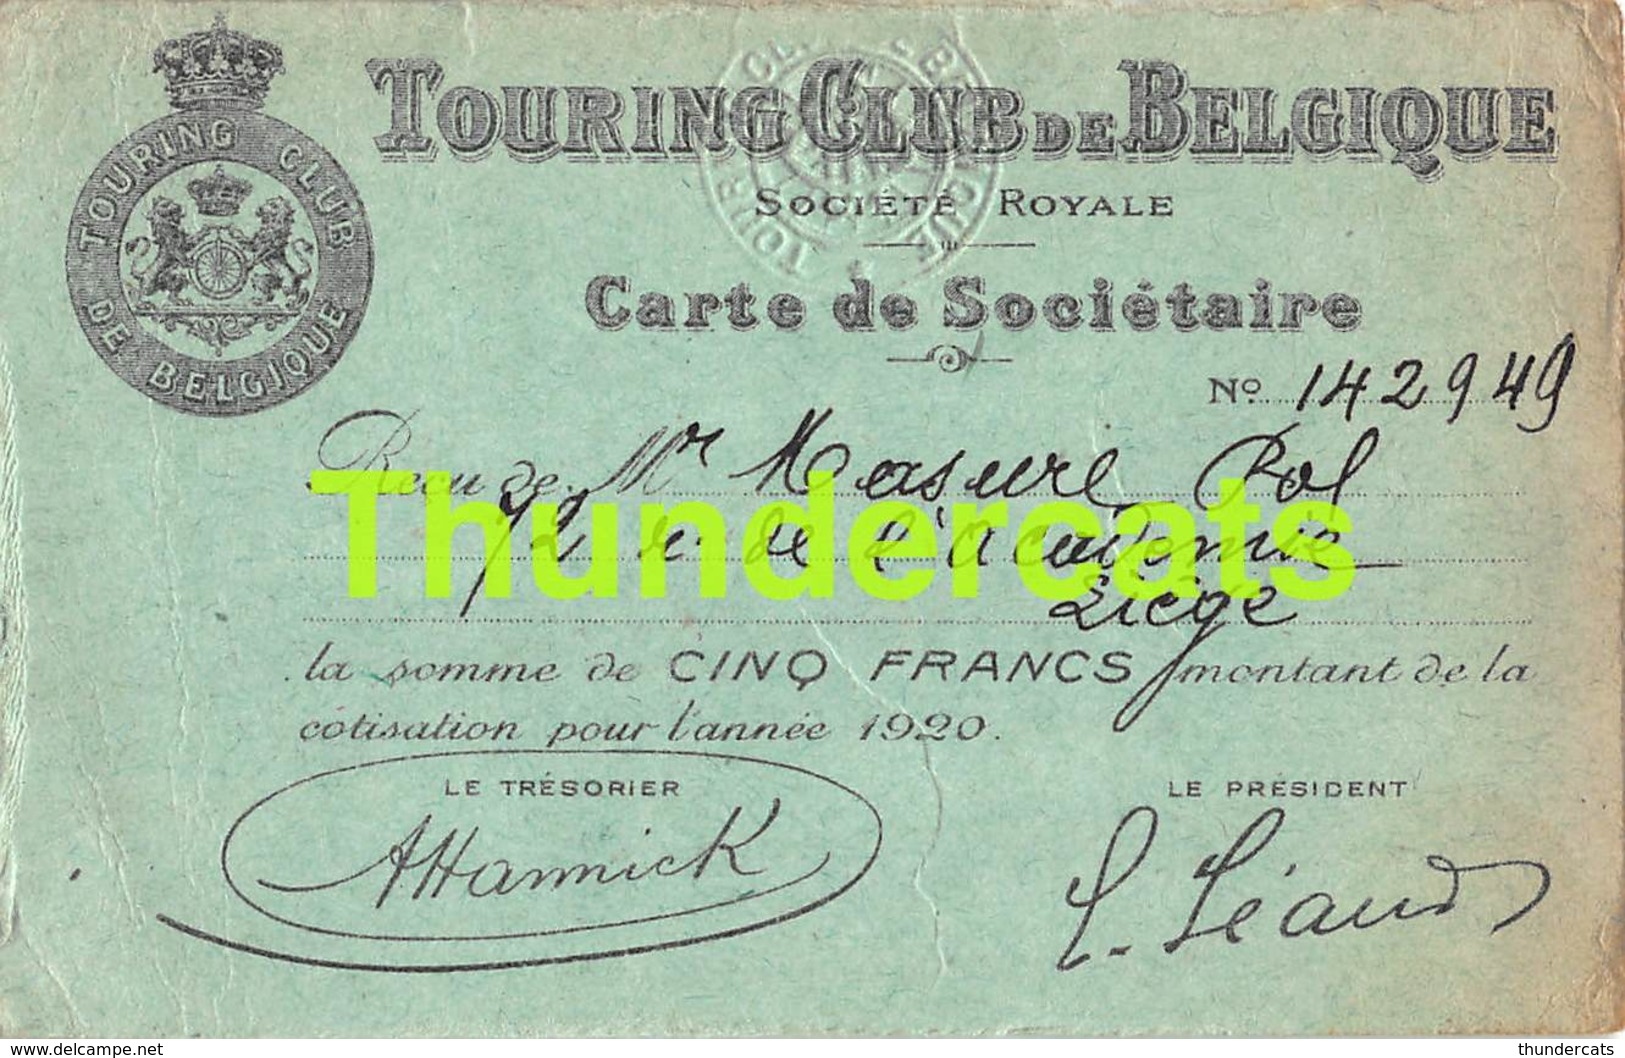 TOURING CLUB DE BELGIQUE CARTE DE SOCIETAIRE 1920 - Documents Historiques